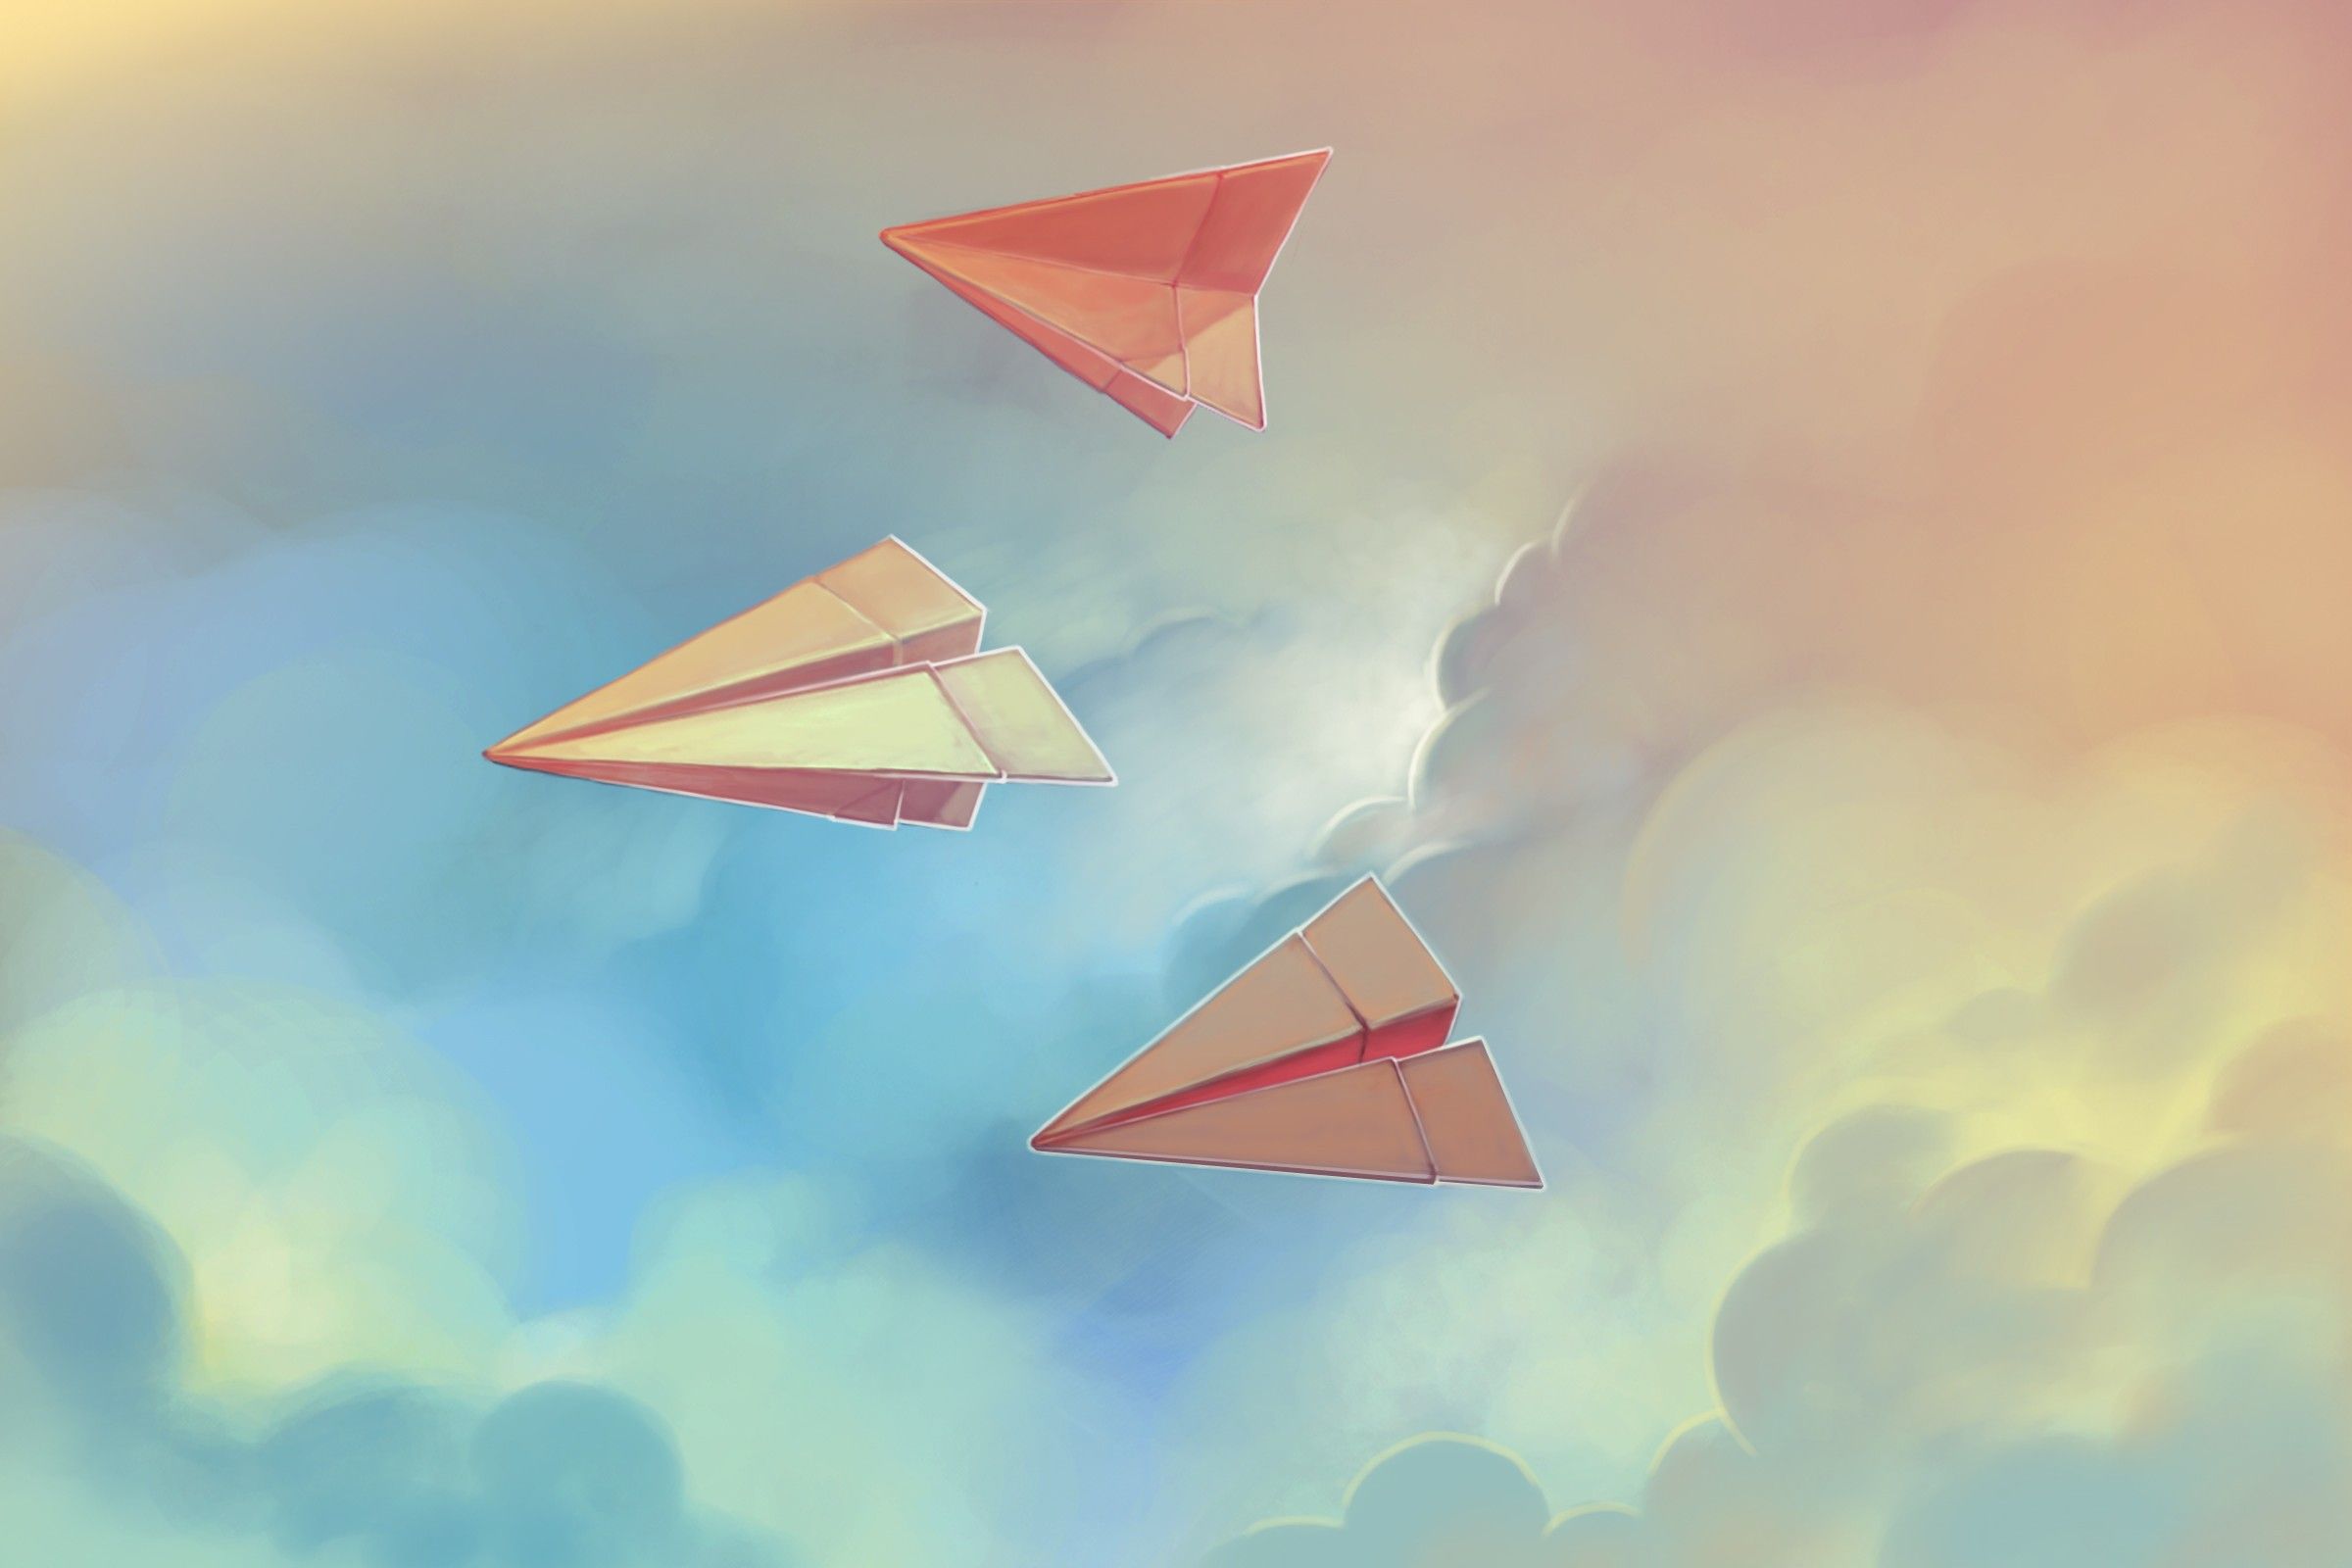 نقاشی 3D موشک های کاغذی جالب در آسمان ابری برای پروفایل  